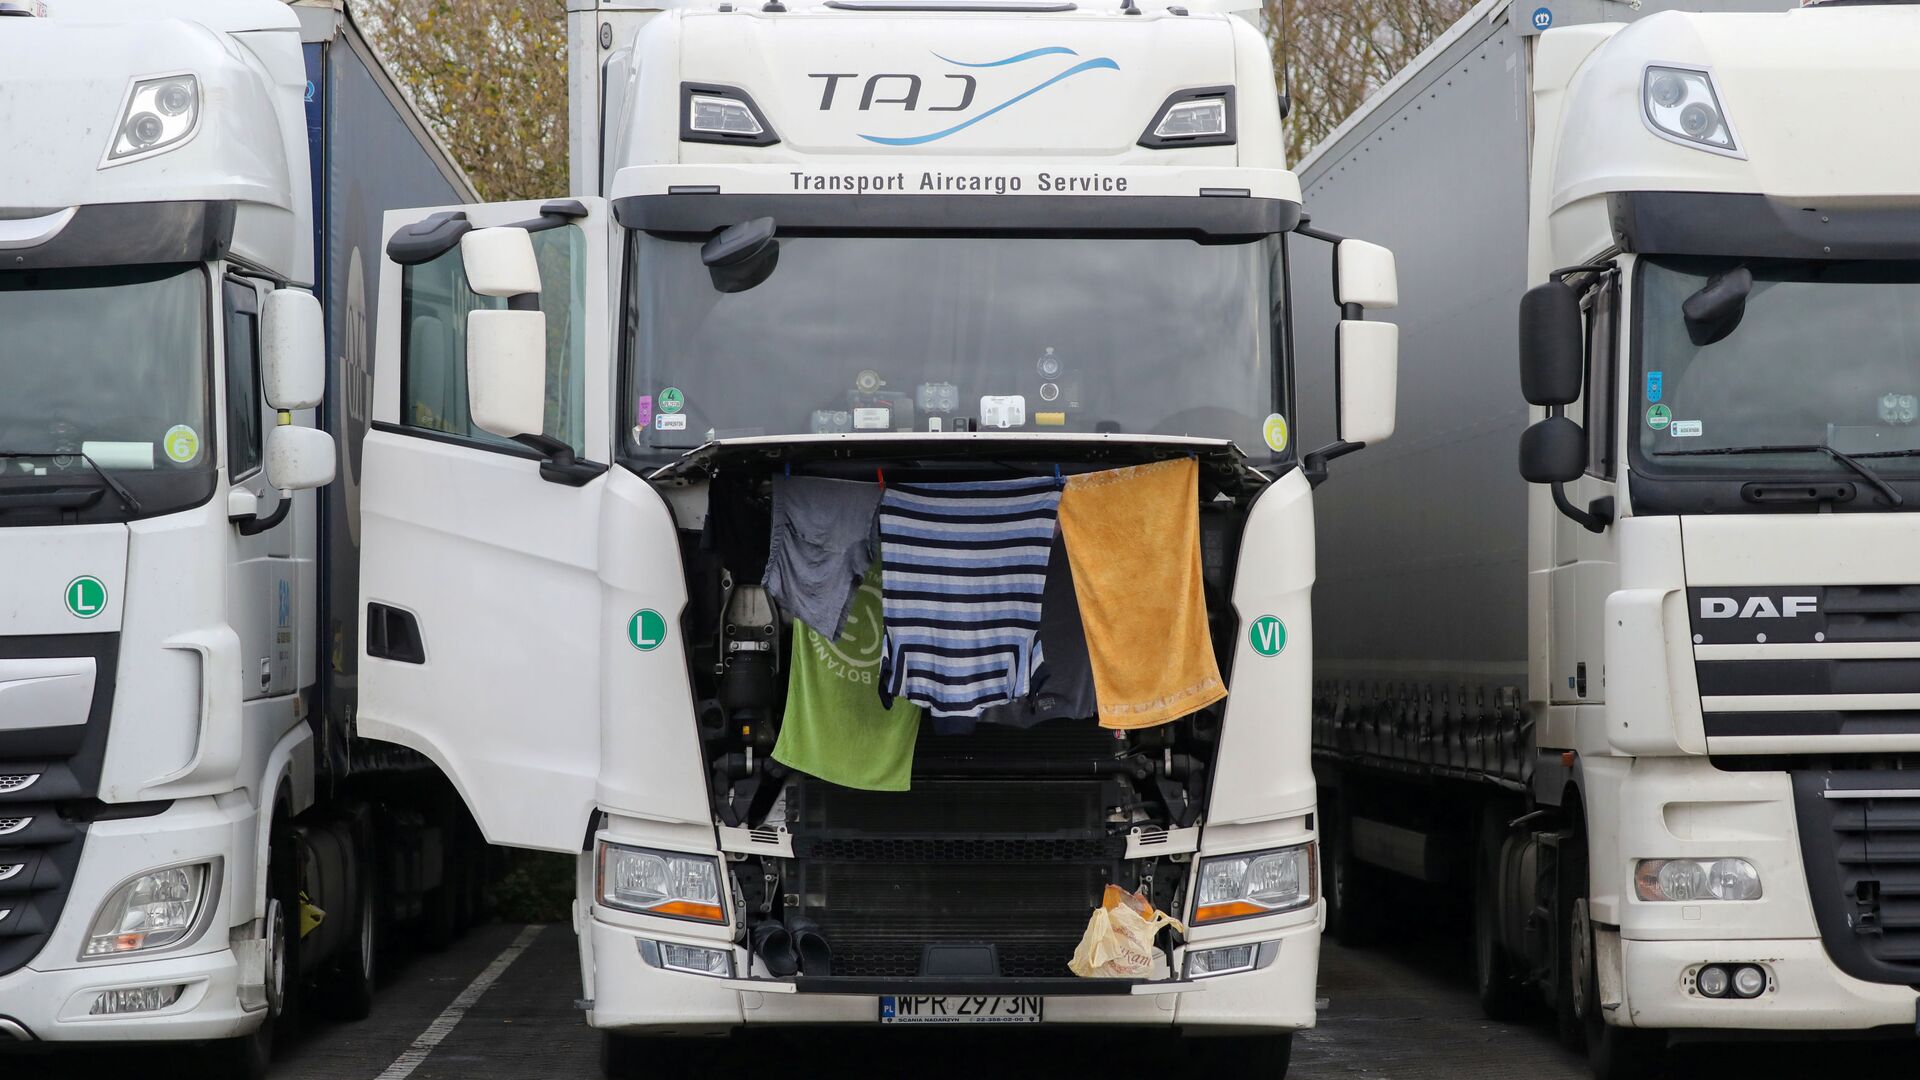 Одежда и полотенца сушатся в грузовике на стоянке для грузовиков в Эшфорде - Sputnik Латвия, 1920, 13.09.2021